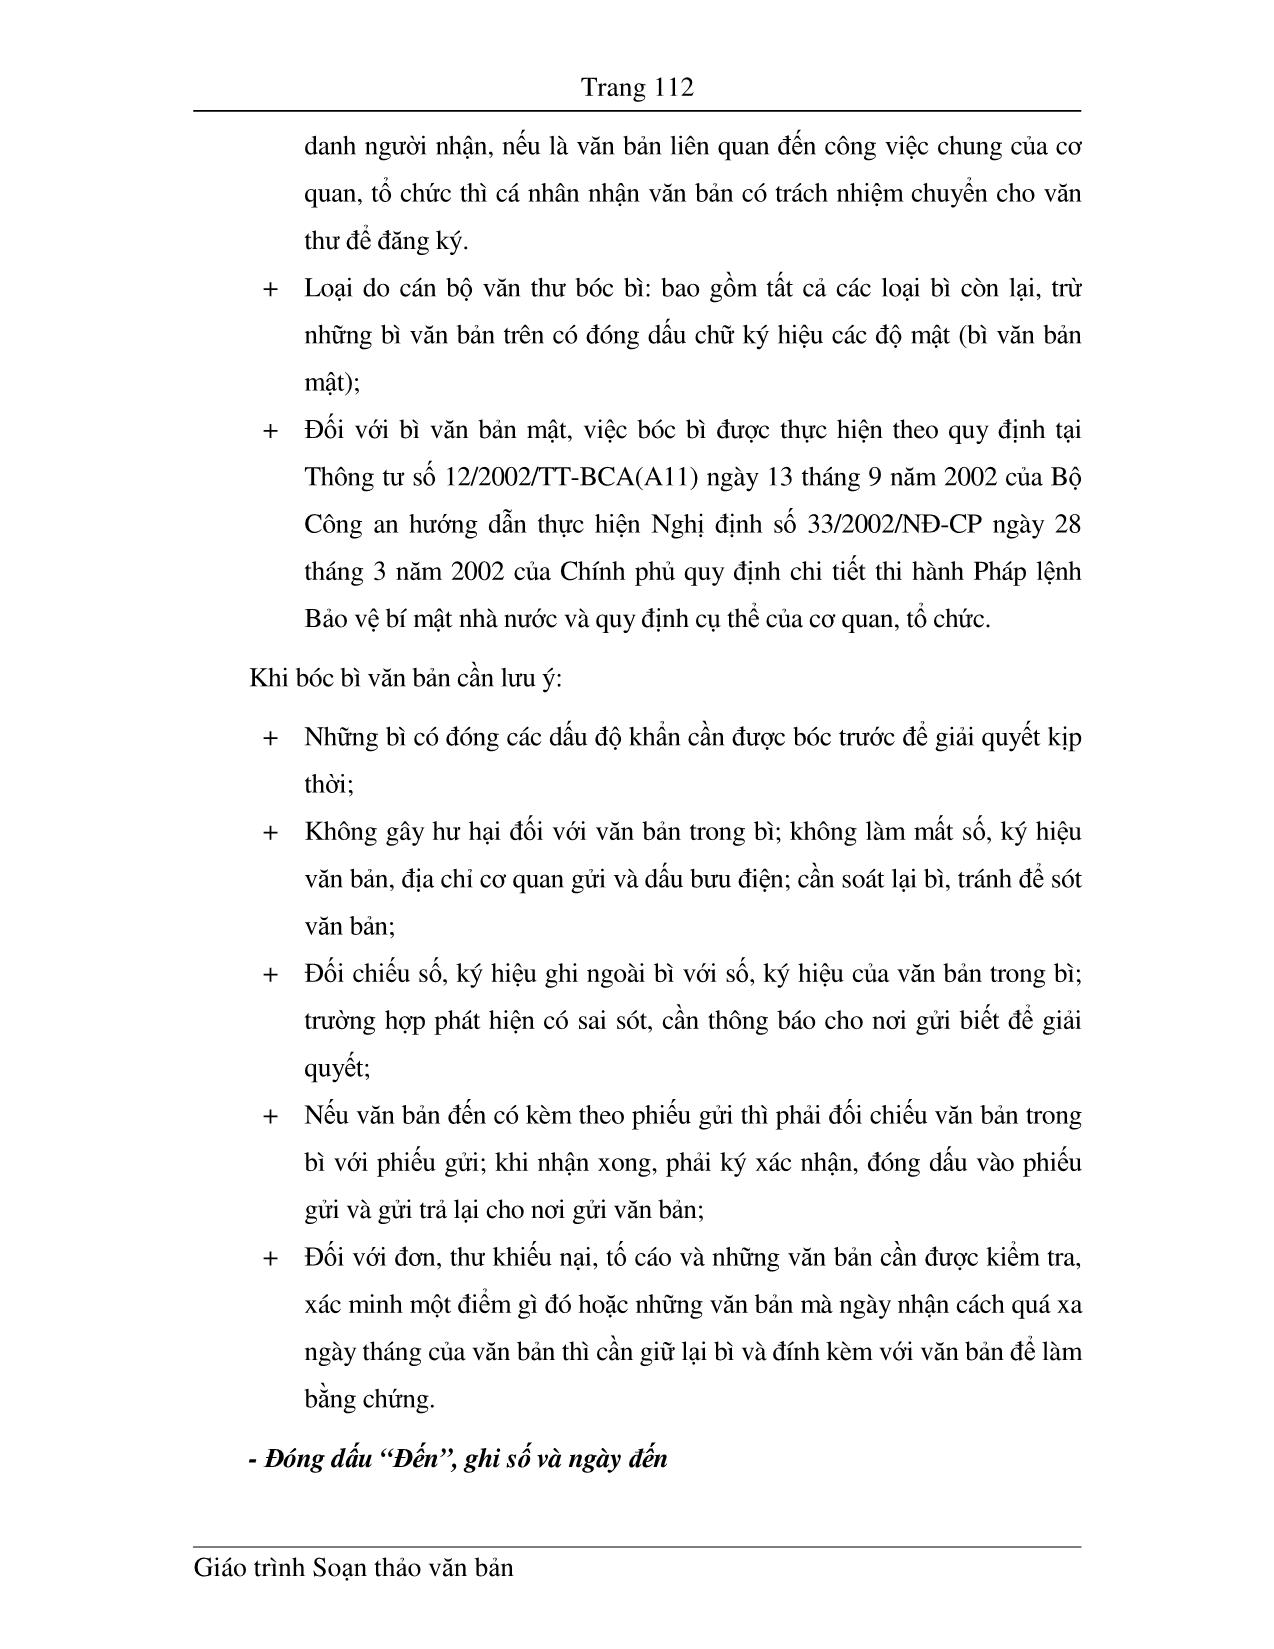 Giáo trình Soạn thảo văn bản (Phần 2) trang 5